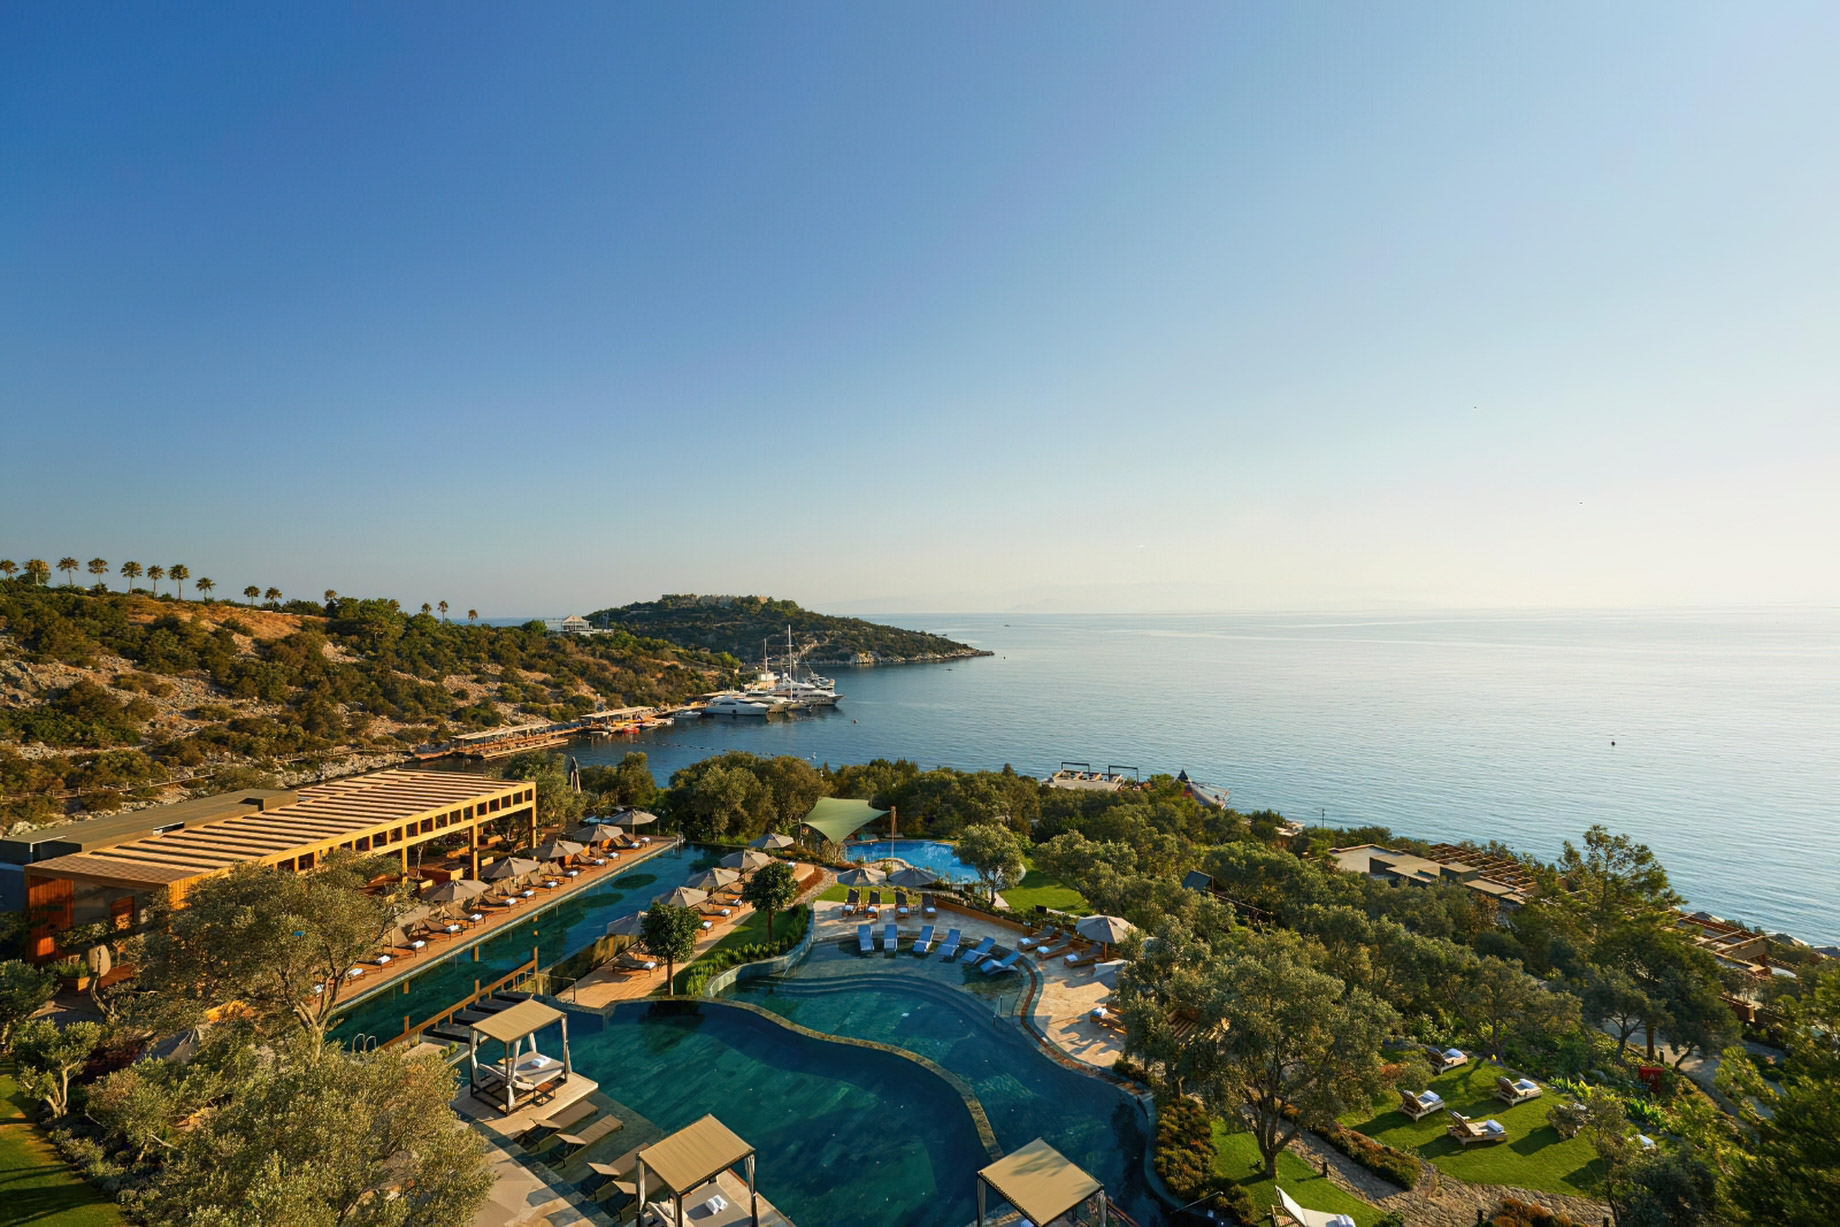 Mandarin Oriental, Bodrum Hotel – Bodrum, Turkey – Aerial View